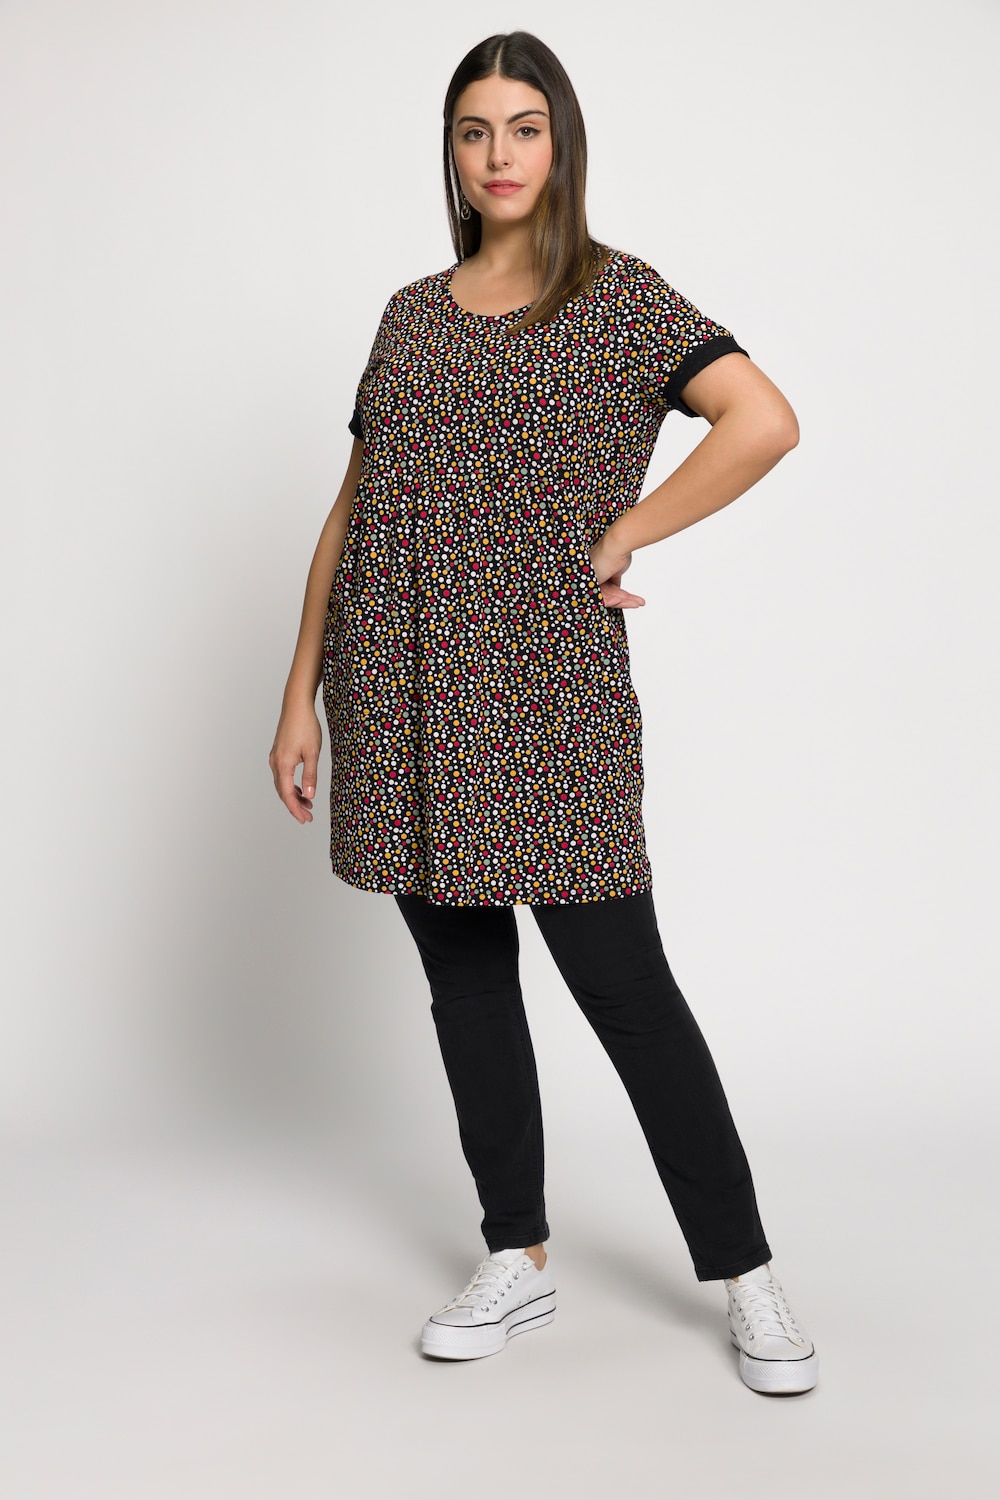 Plus Size Multi Dot Print A-line Fit Cotton Knit Tunic Dress, Woman, black, size: 20/22, cotton, Ulla Popken